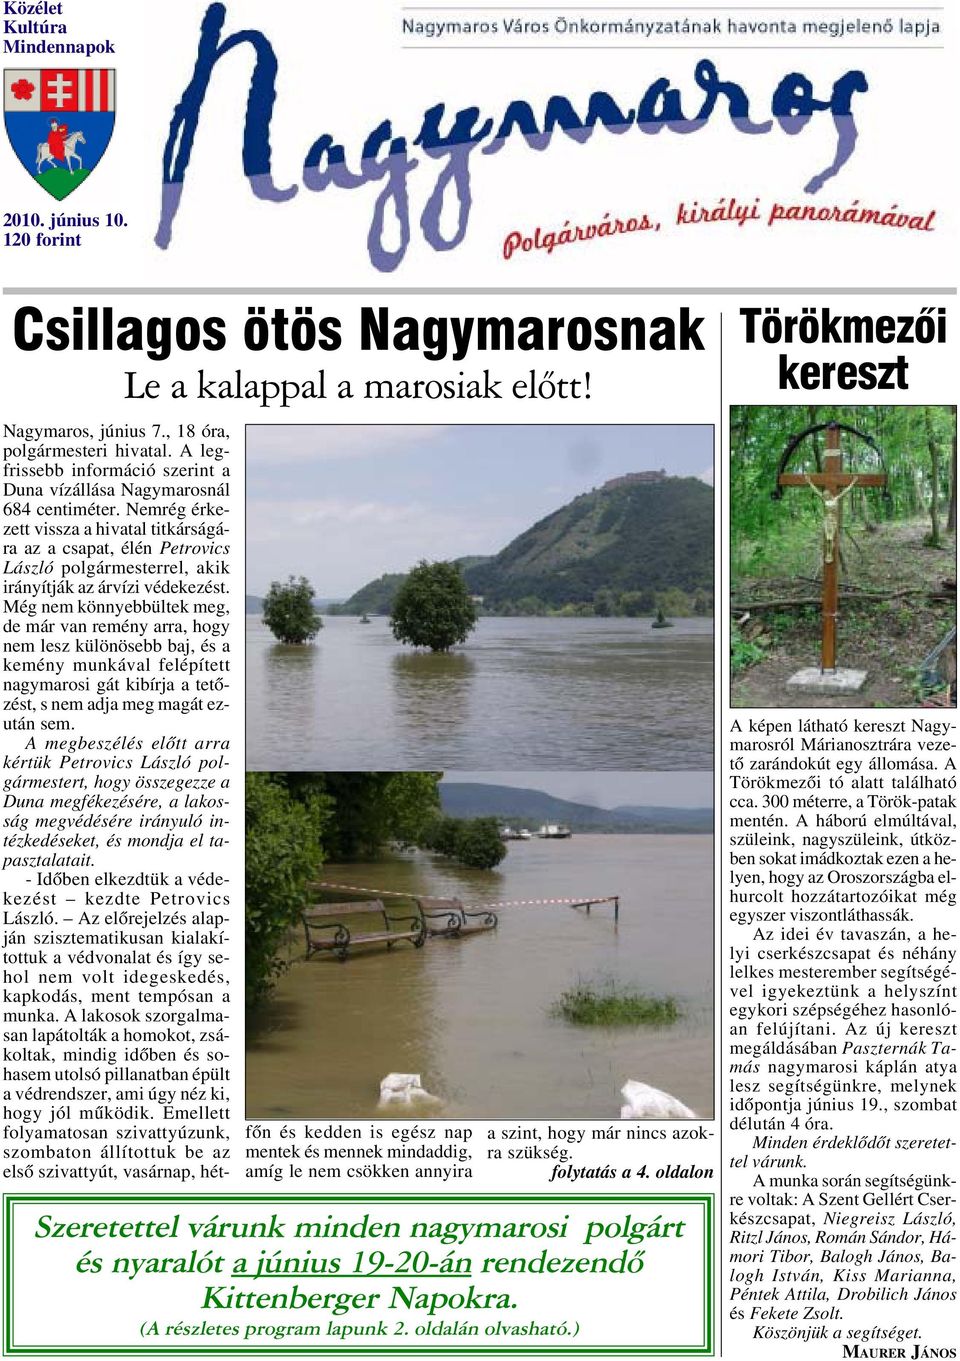 Nemrég érkezett vissza a hivatal titkárságára az a csapat, élén Petrovics László polgármesterrel, akik irányítják az árvízi védekezést.